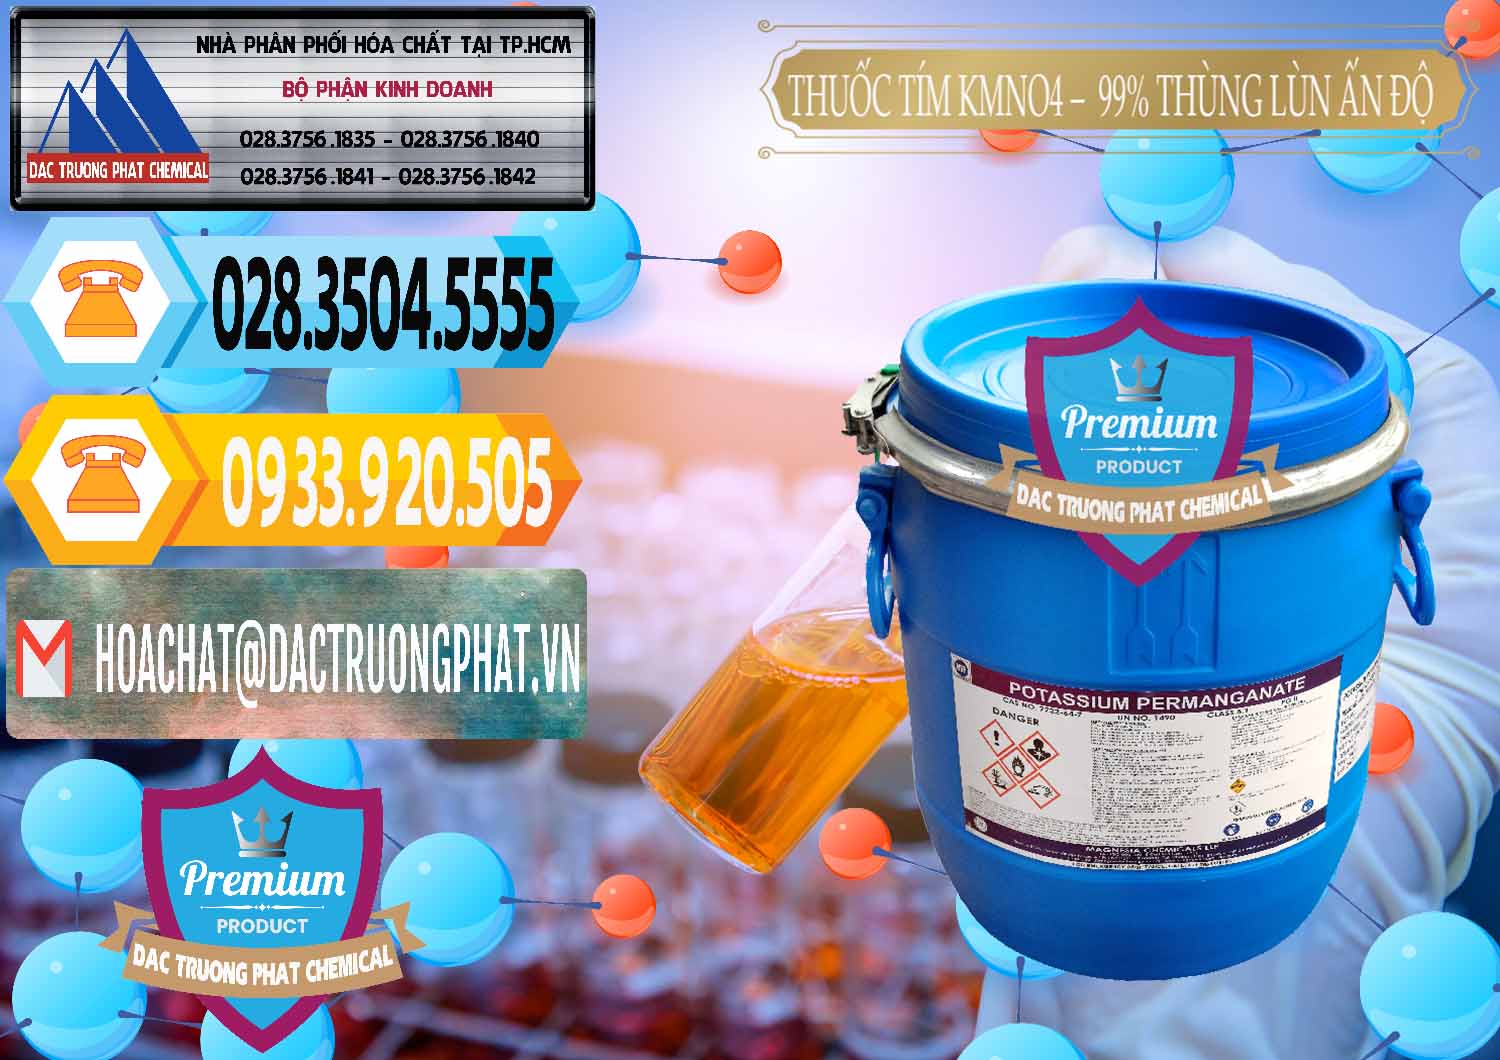 Chuyên kinh doanh ( bán ) Thuốc Tím - KMNO4 Thùng Lùn 99% Magnesia Chemicals Ấn Độ India - 0165 - Cung cấp và phân phối hóa chất tại TP.HCM - hoachattayrua.net